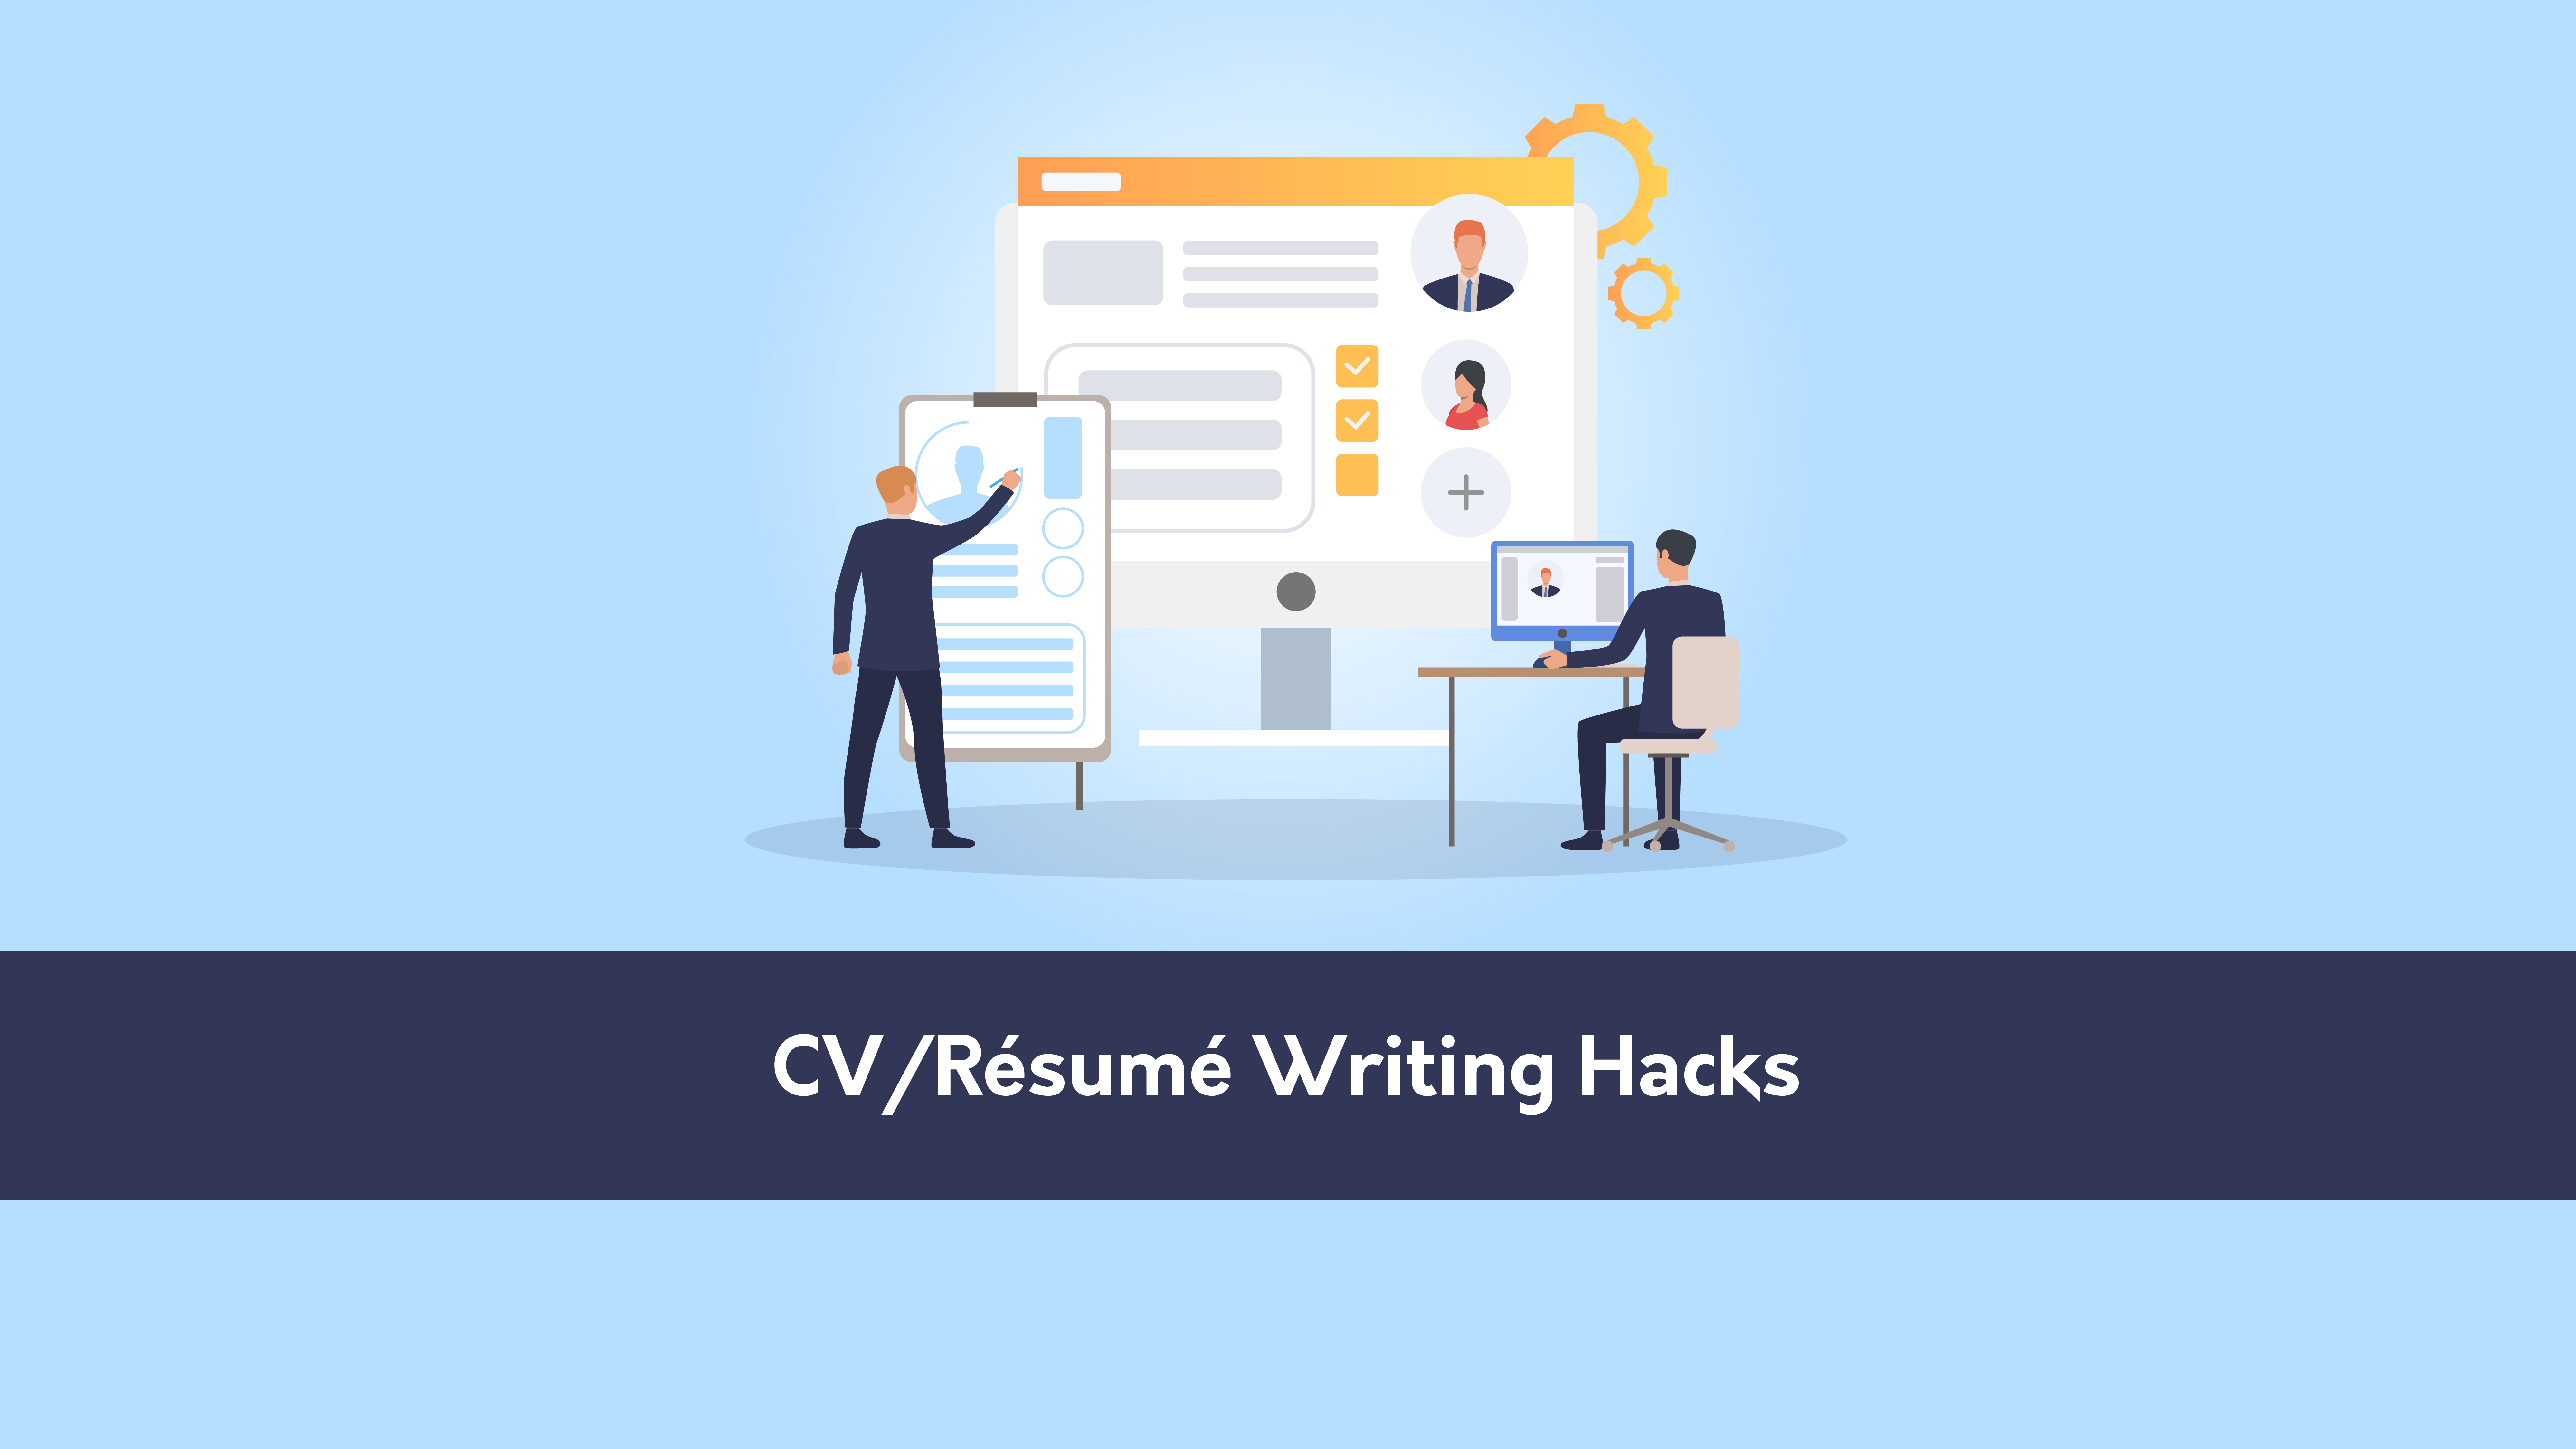 CV/Résumé Writing Hacks course image